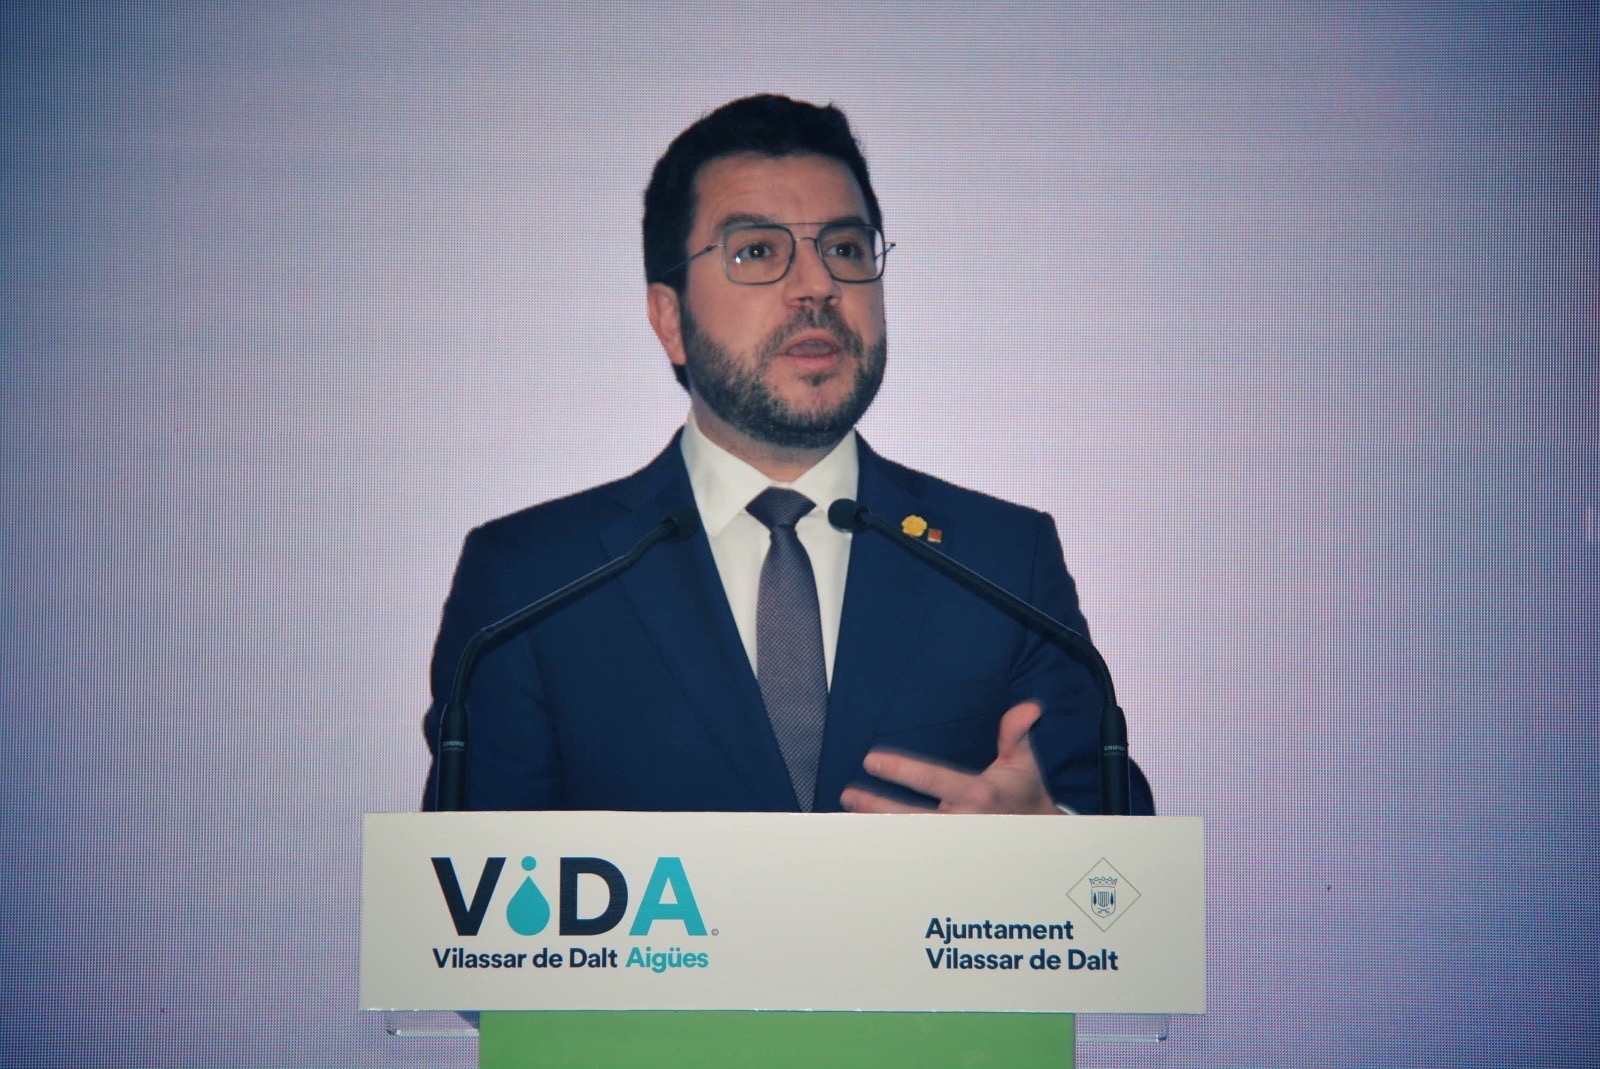  El president de la Generalitat, Pere Aragonès, inaugura ViDA